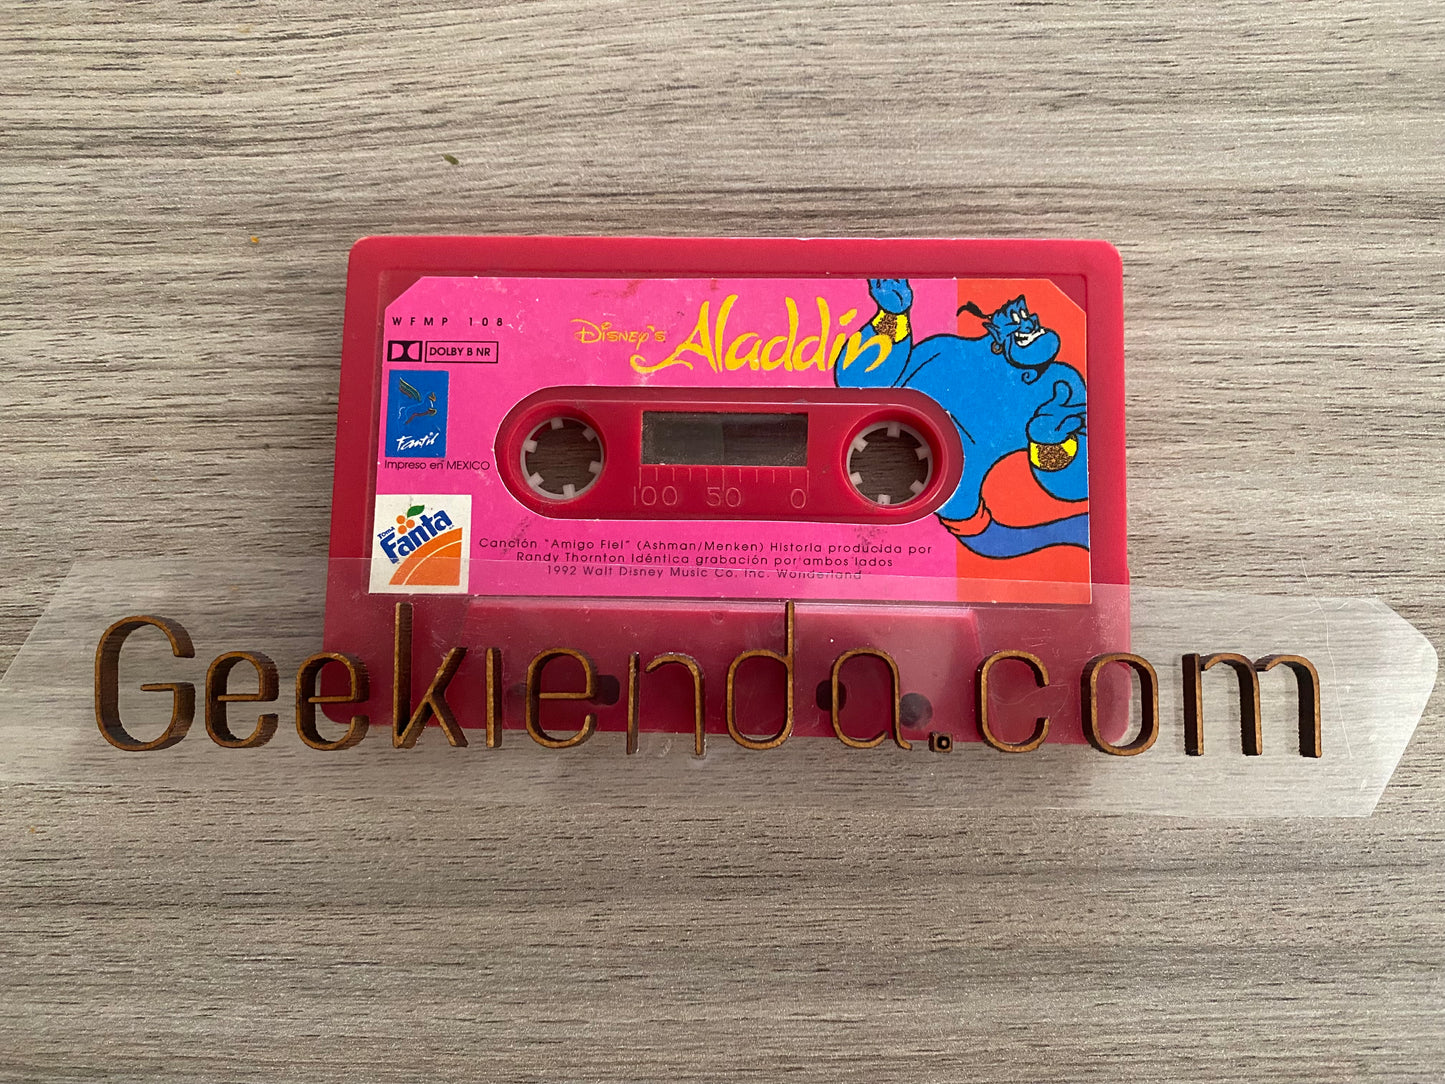 .Geekienda - promocional cassette DISNEY Aladdin canción amigo fiel de fanta